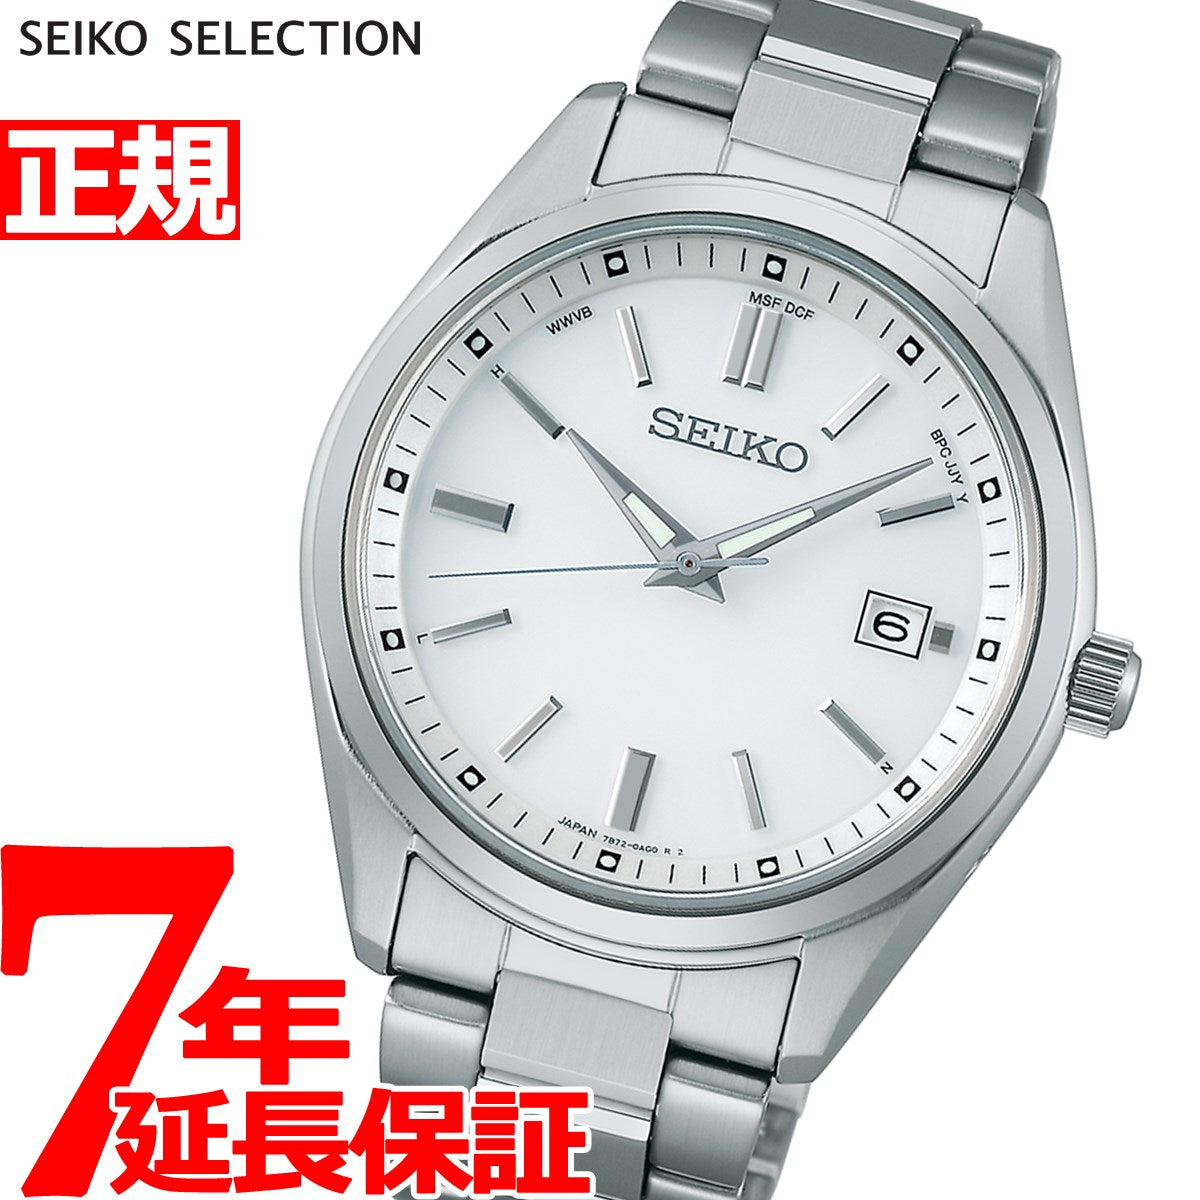 セイコー SEIKO セイコーセレクション SEIKO SELECTION SBTM319 ソーラー電波修正 7B72 腕時計 メンズ 流通限定モデル  メンズ腕時計